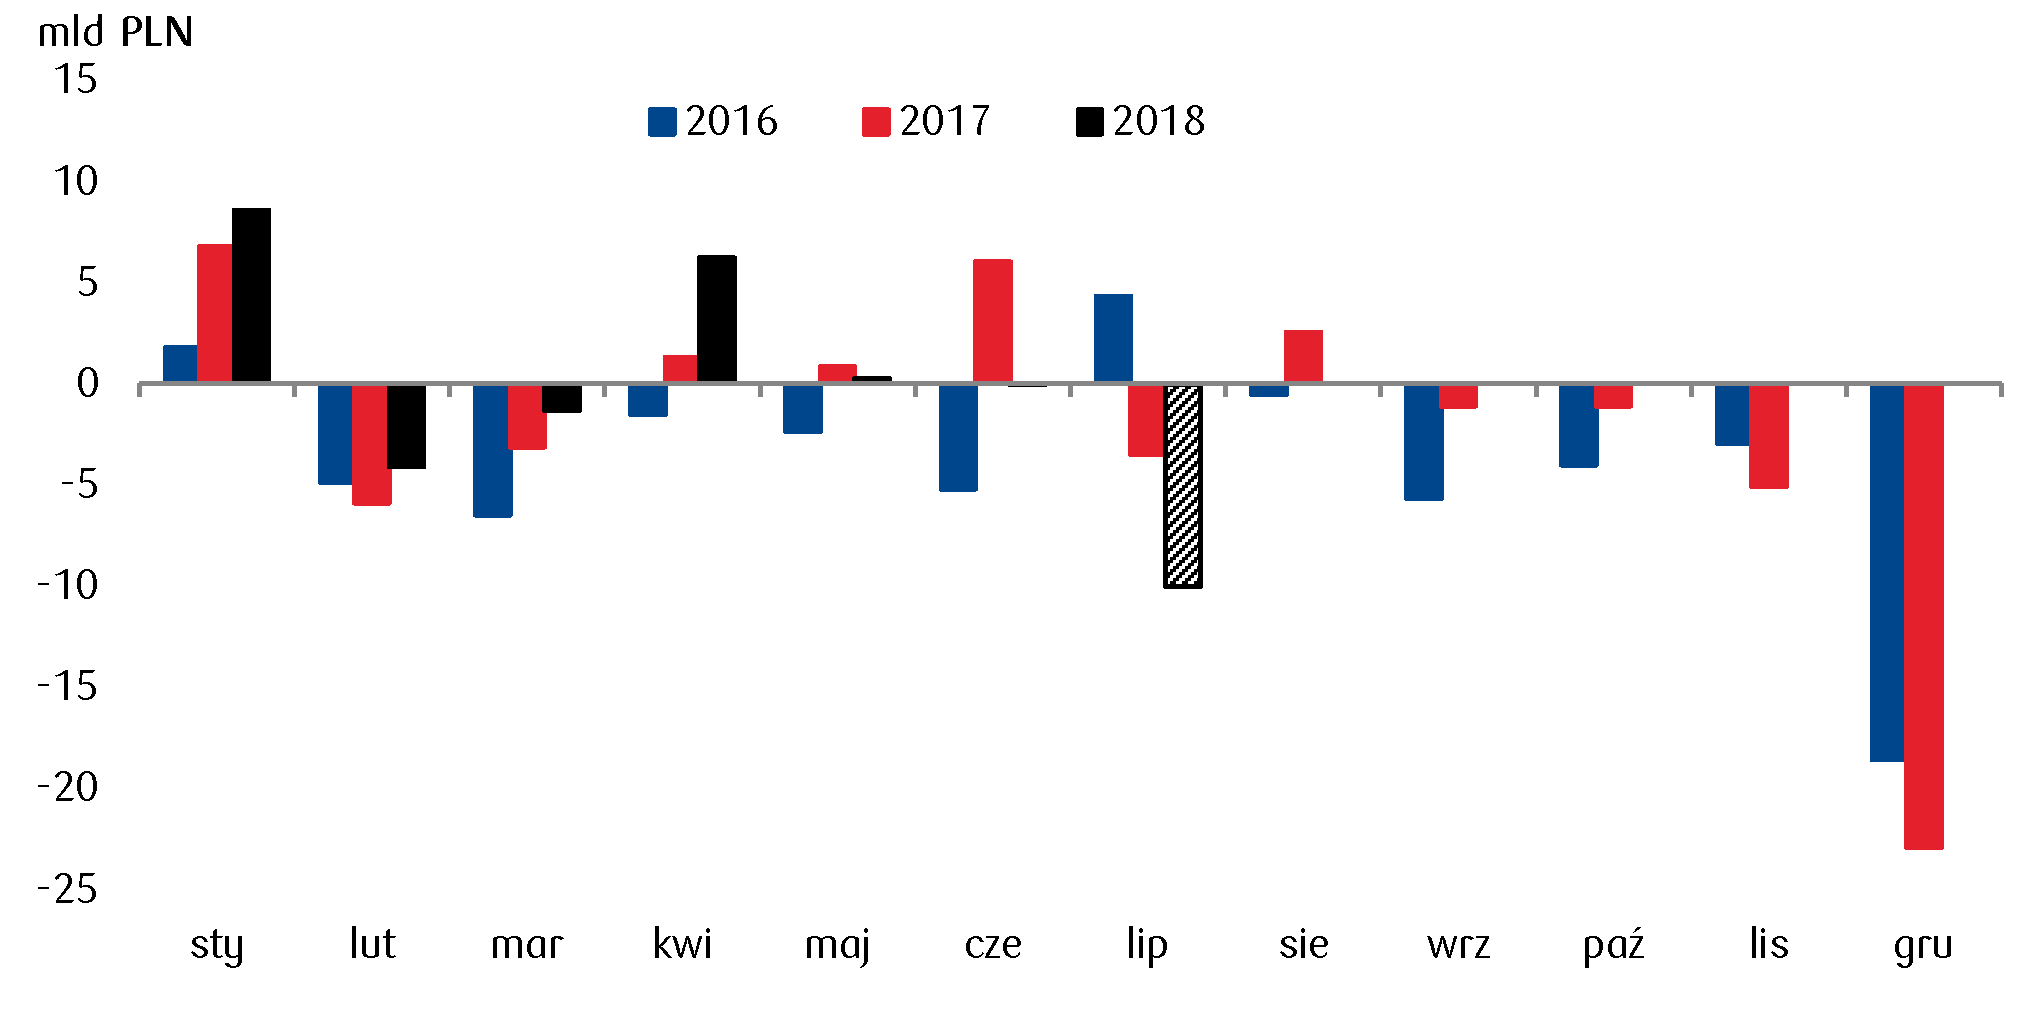 Po lipcu prawdopodobnie znikła nadwyżka w budżecie, co oznacza, że w lipcu mógł pojawić się deficyt w wysokości około 10mld PLN